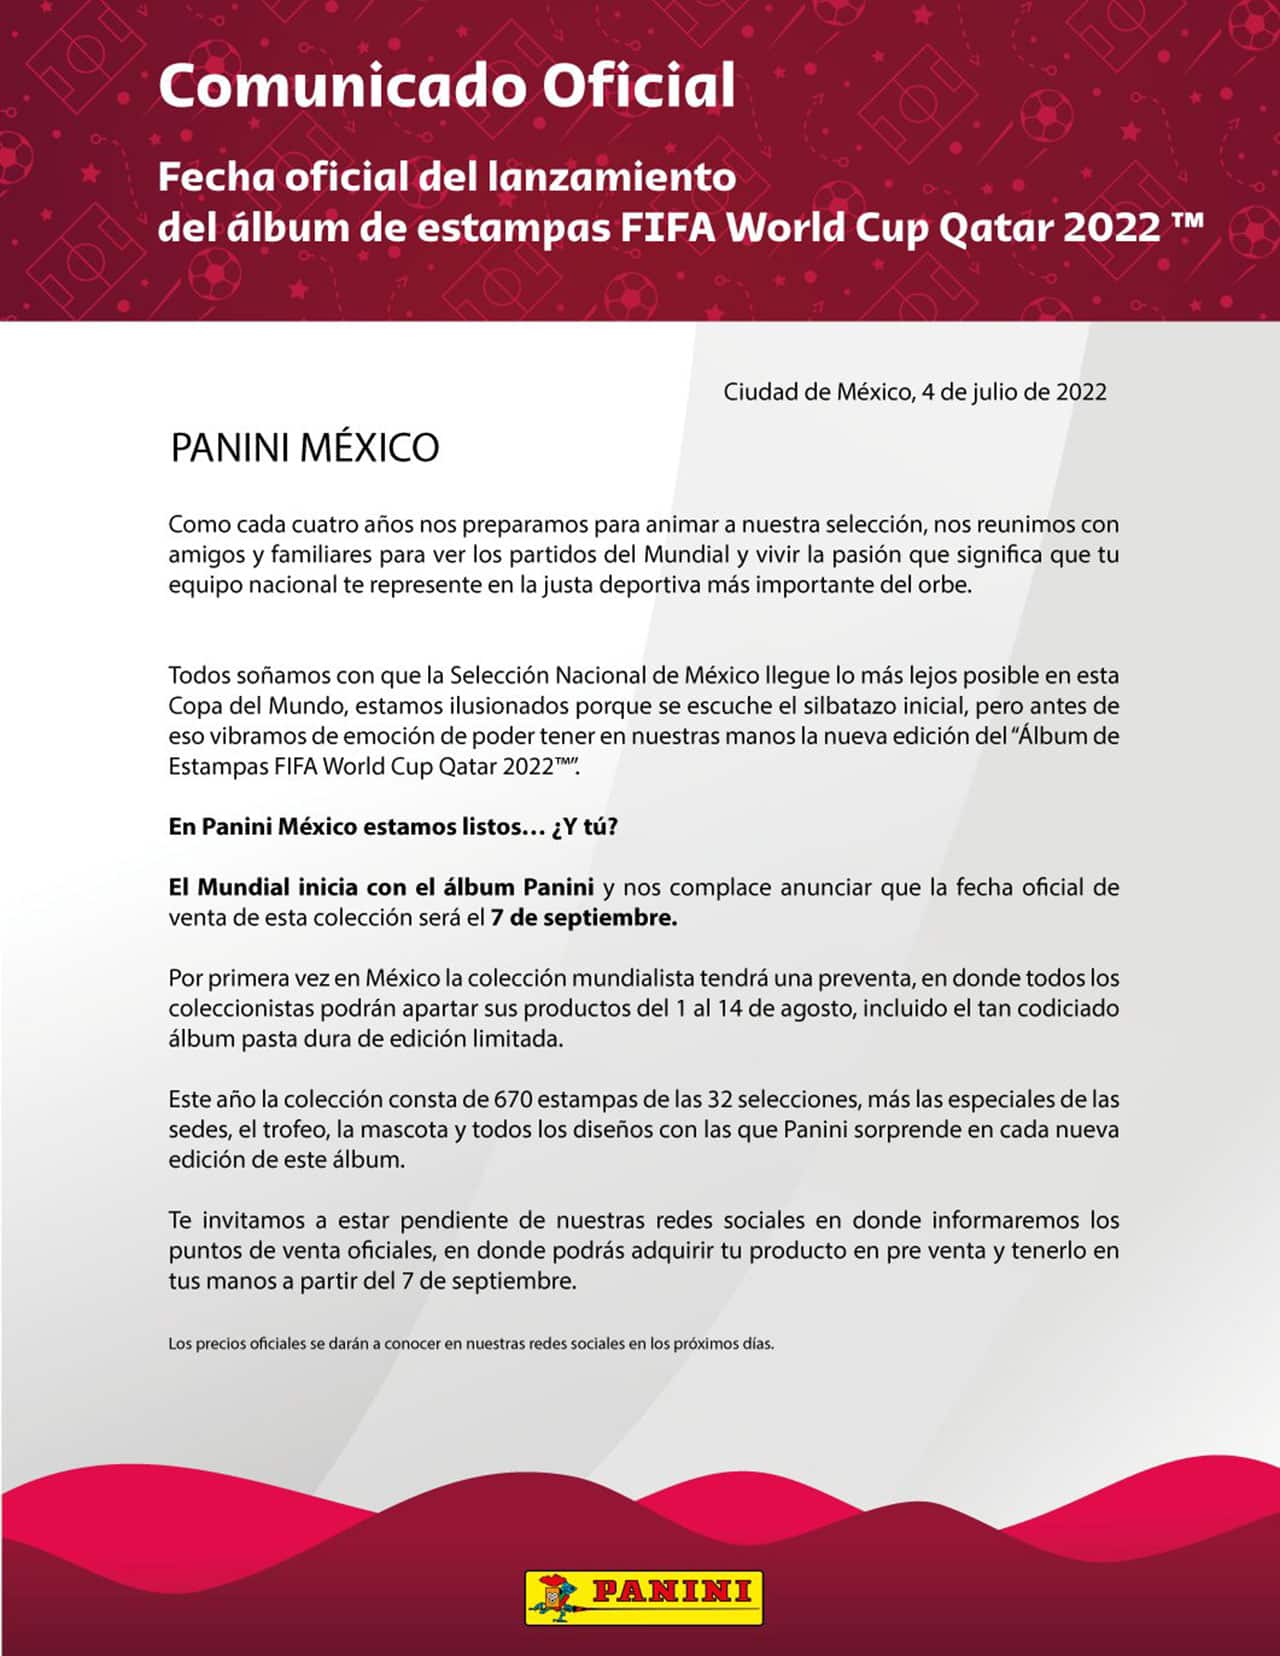 Panini revela el costo y fecha lanzamiento álbum Qatar 2022